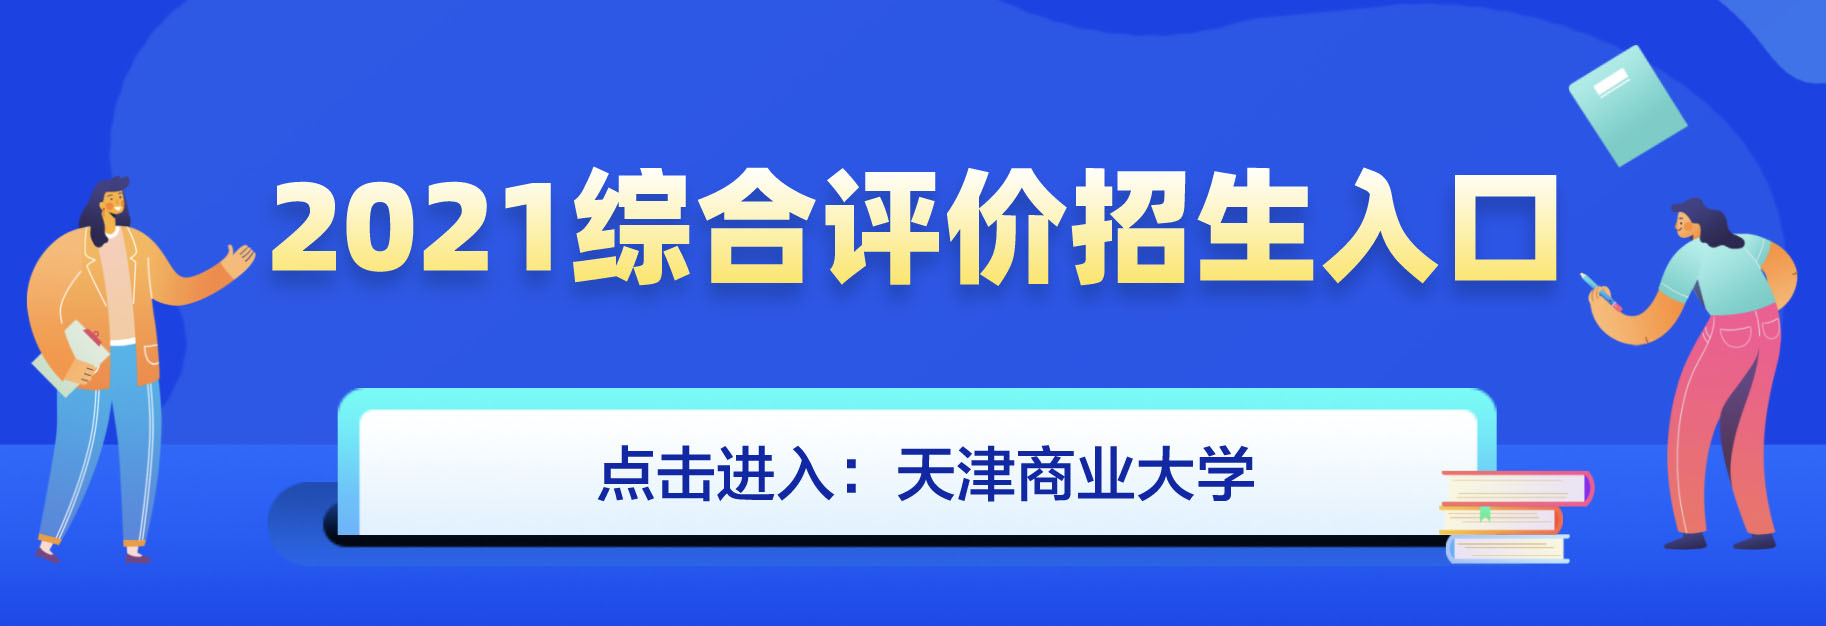 天津商业大学2021年综合评价招生简章发布了么？